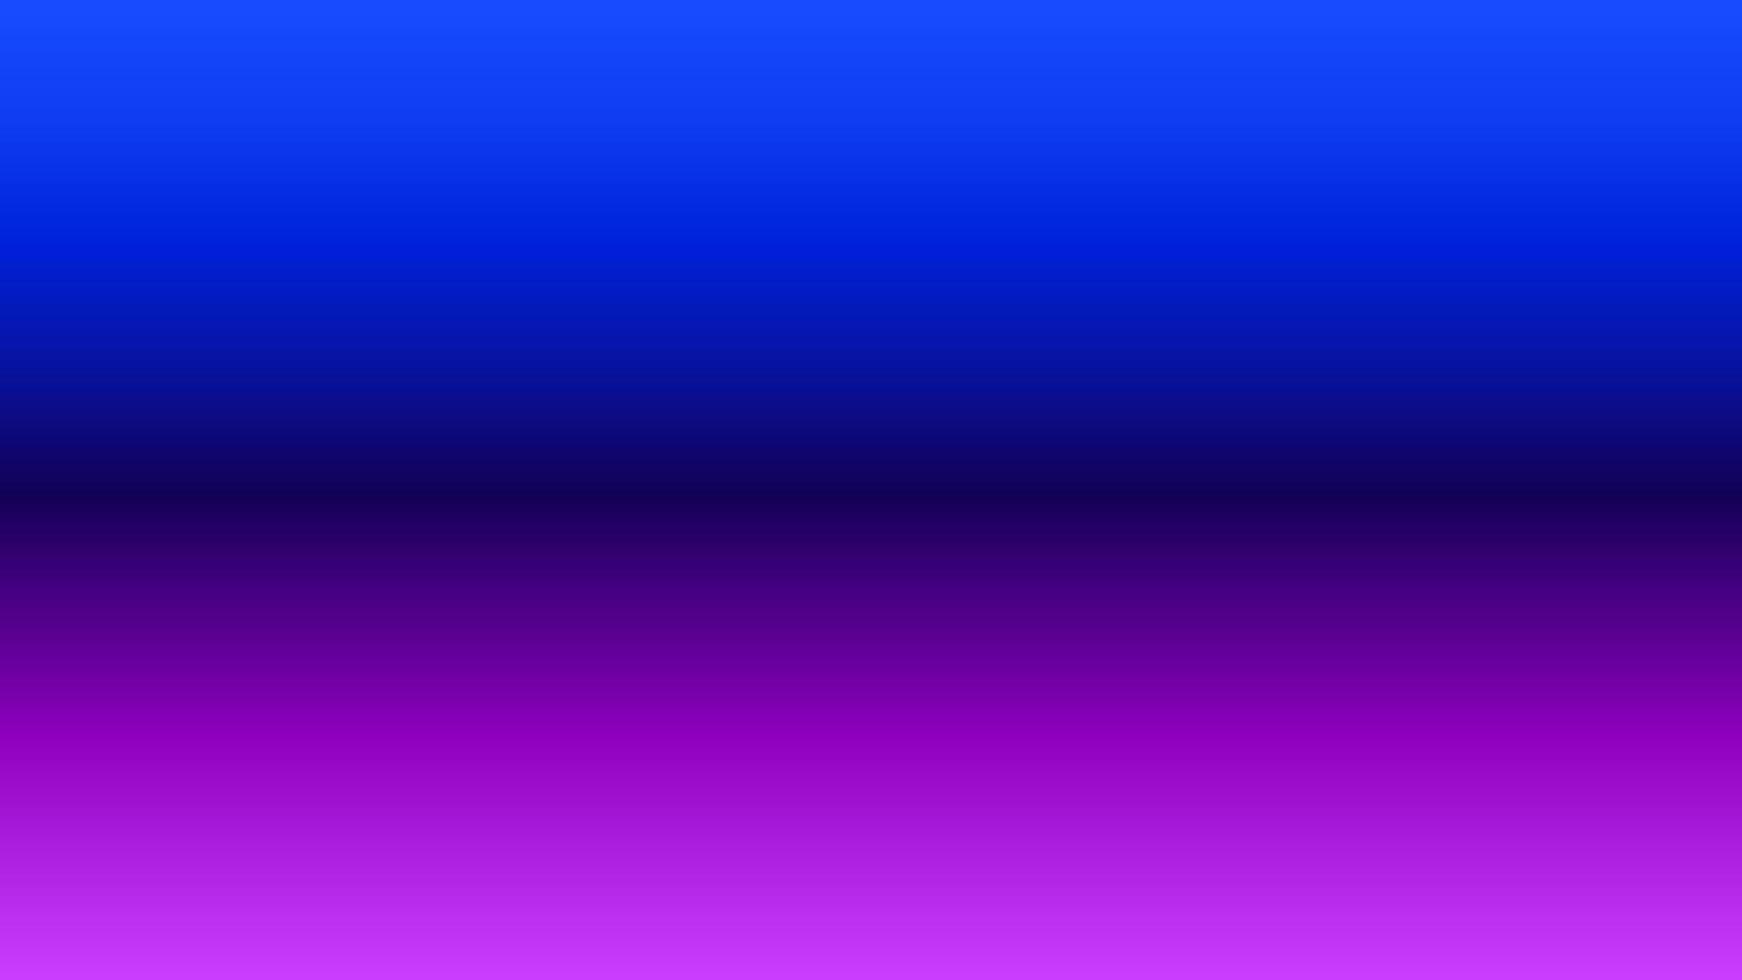 abstrakter Hintergrund mit Farbverlauf blau und rosa perfekt für Design, Tapete, Werbung, Präsentation, Website, Banner usw. Illustrationshintergrund vektor